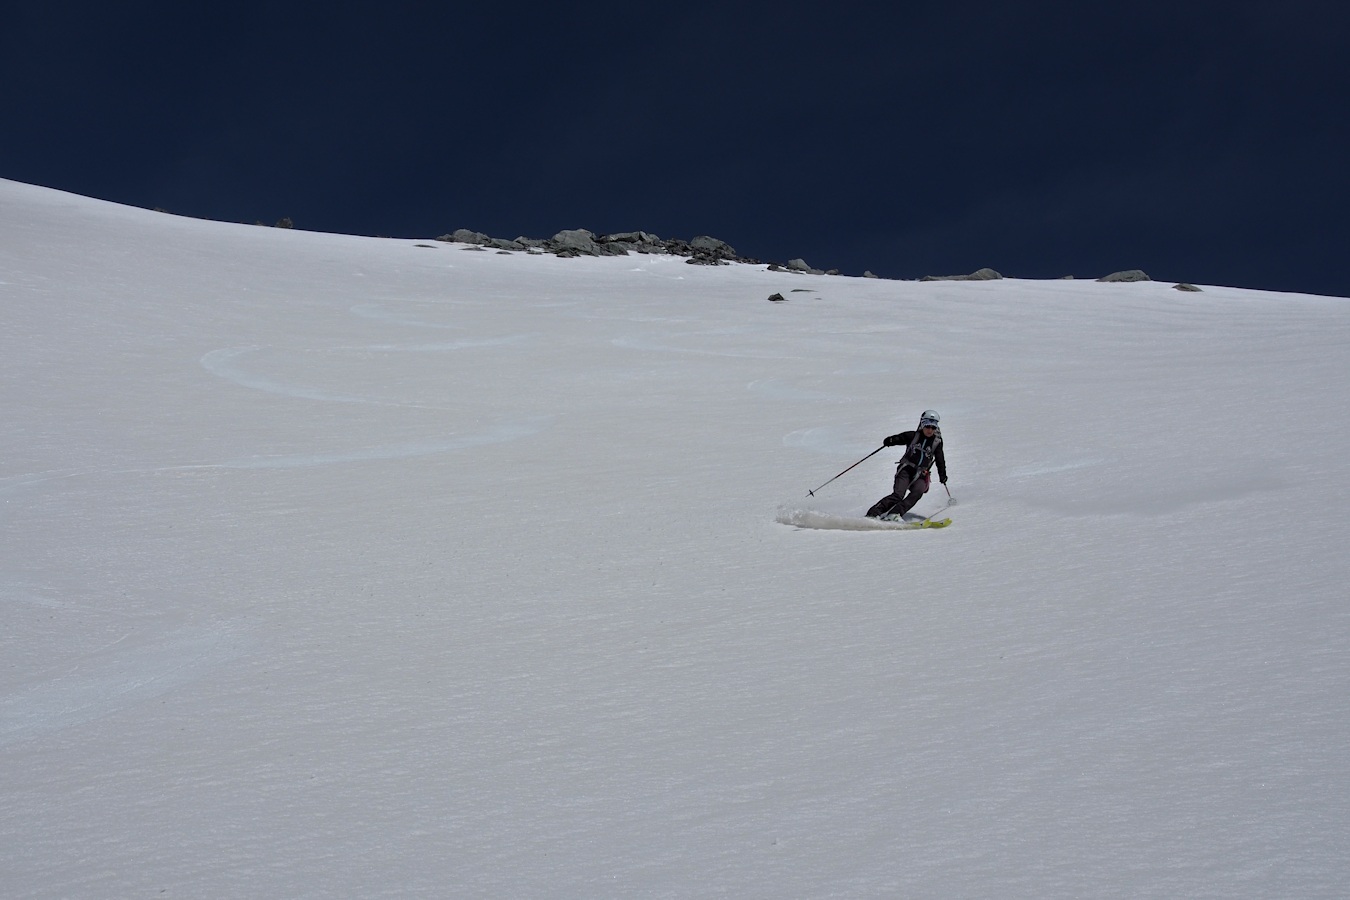 Première descente : Excellent ski sur de belles pentes (40° maxi).